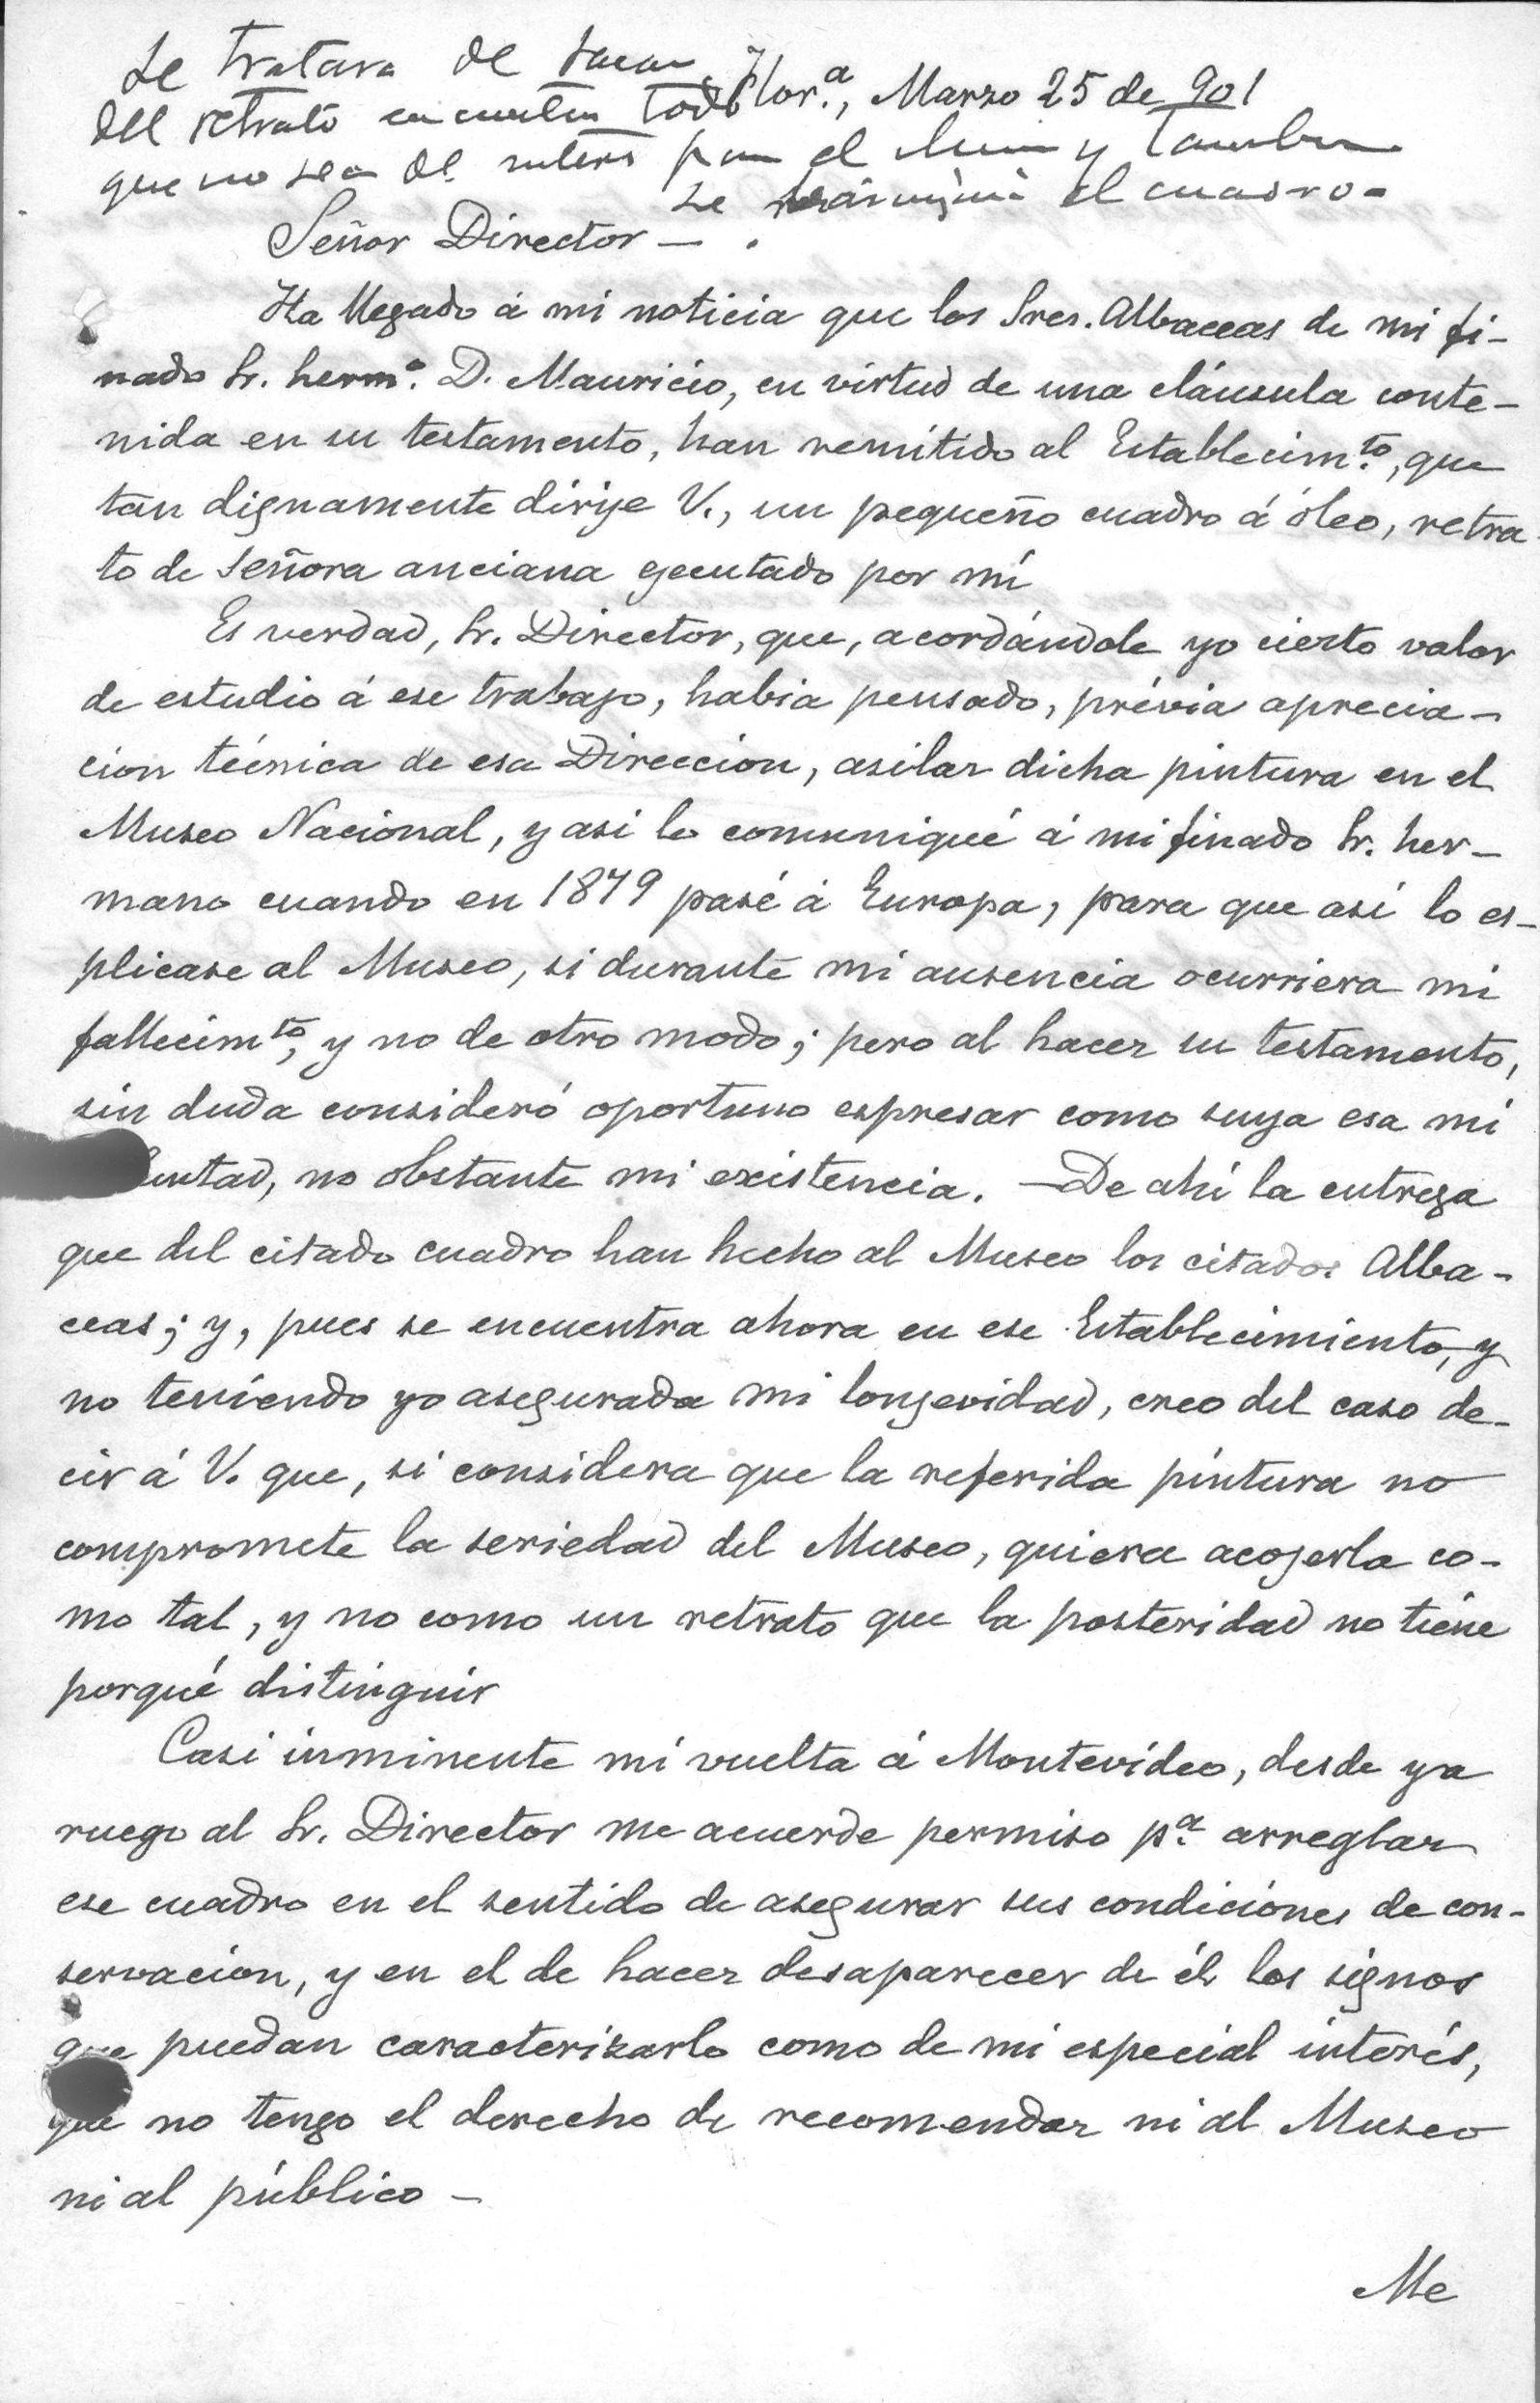 Cartas de Juan Manuel Blanes - Carta de J.M. Blanes al Sr. José Arechavaleta   , 25/03/1901